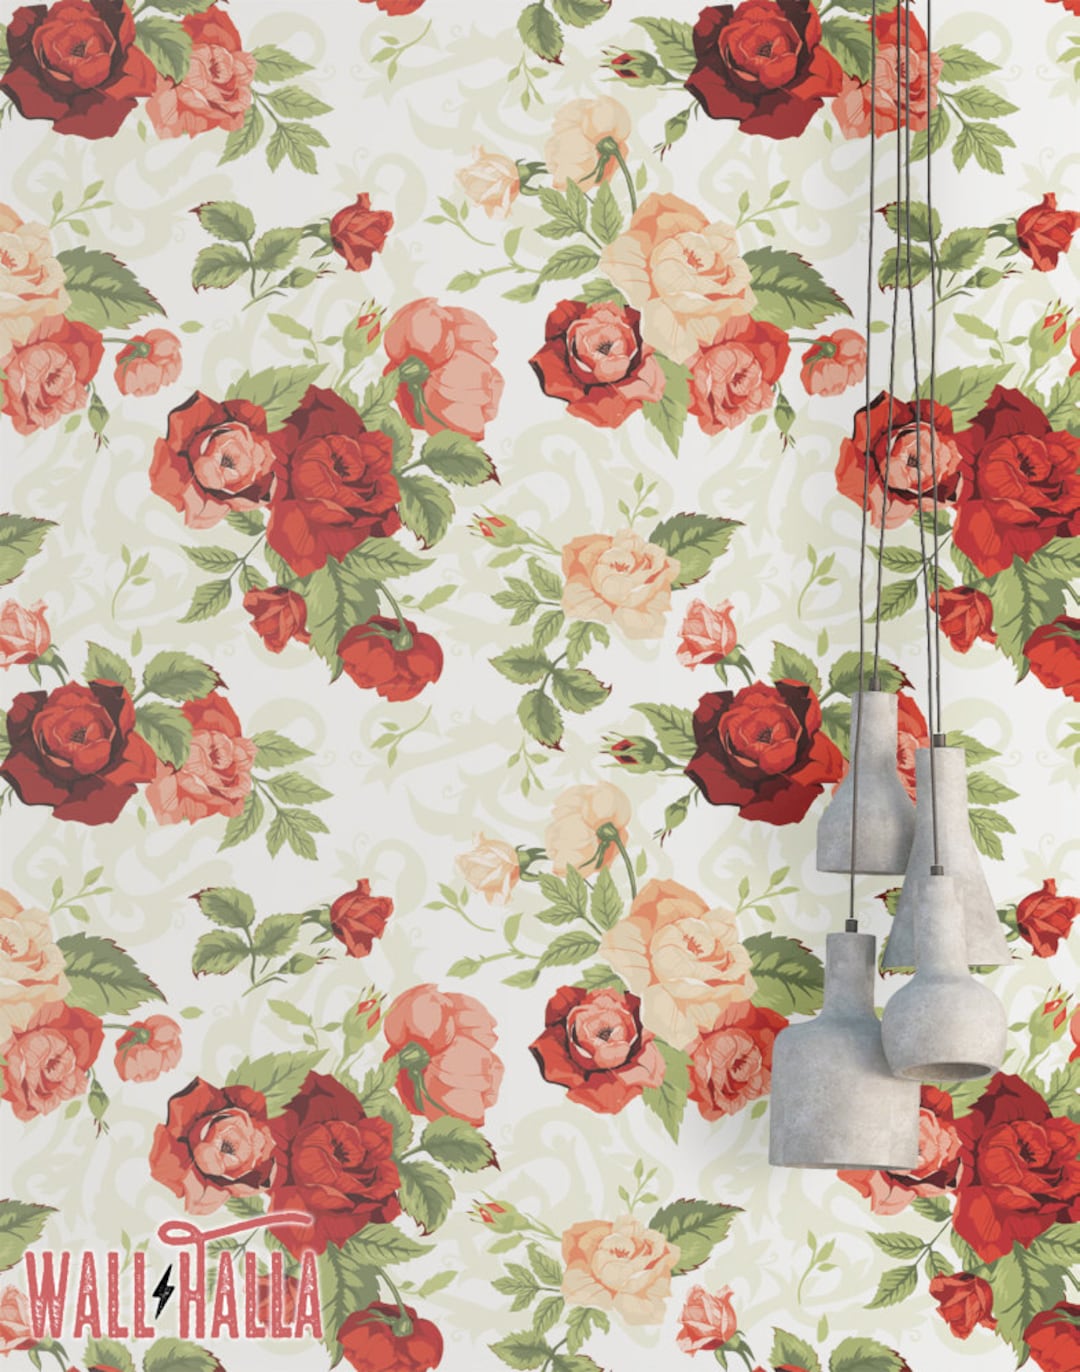 Mẫu giấy dán tường Rose Flower Vintage Wallpaper sẽ khiến bạn say mê với hoa hồng cổ điển tươi sáng, tạo nên một không khí thật ấm áp và đầy cảm hứng cho căn phòng của bạn.